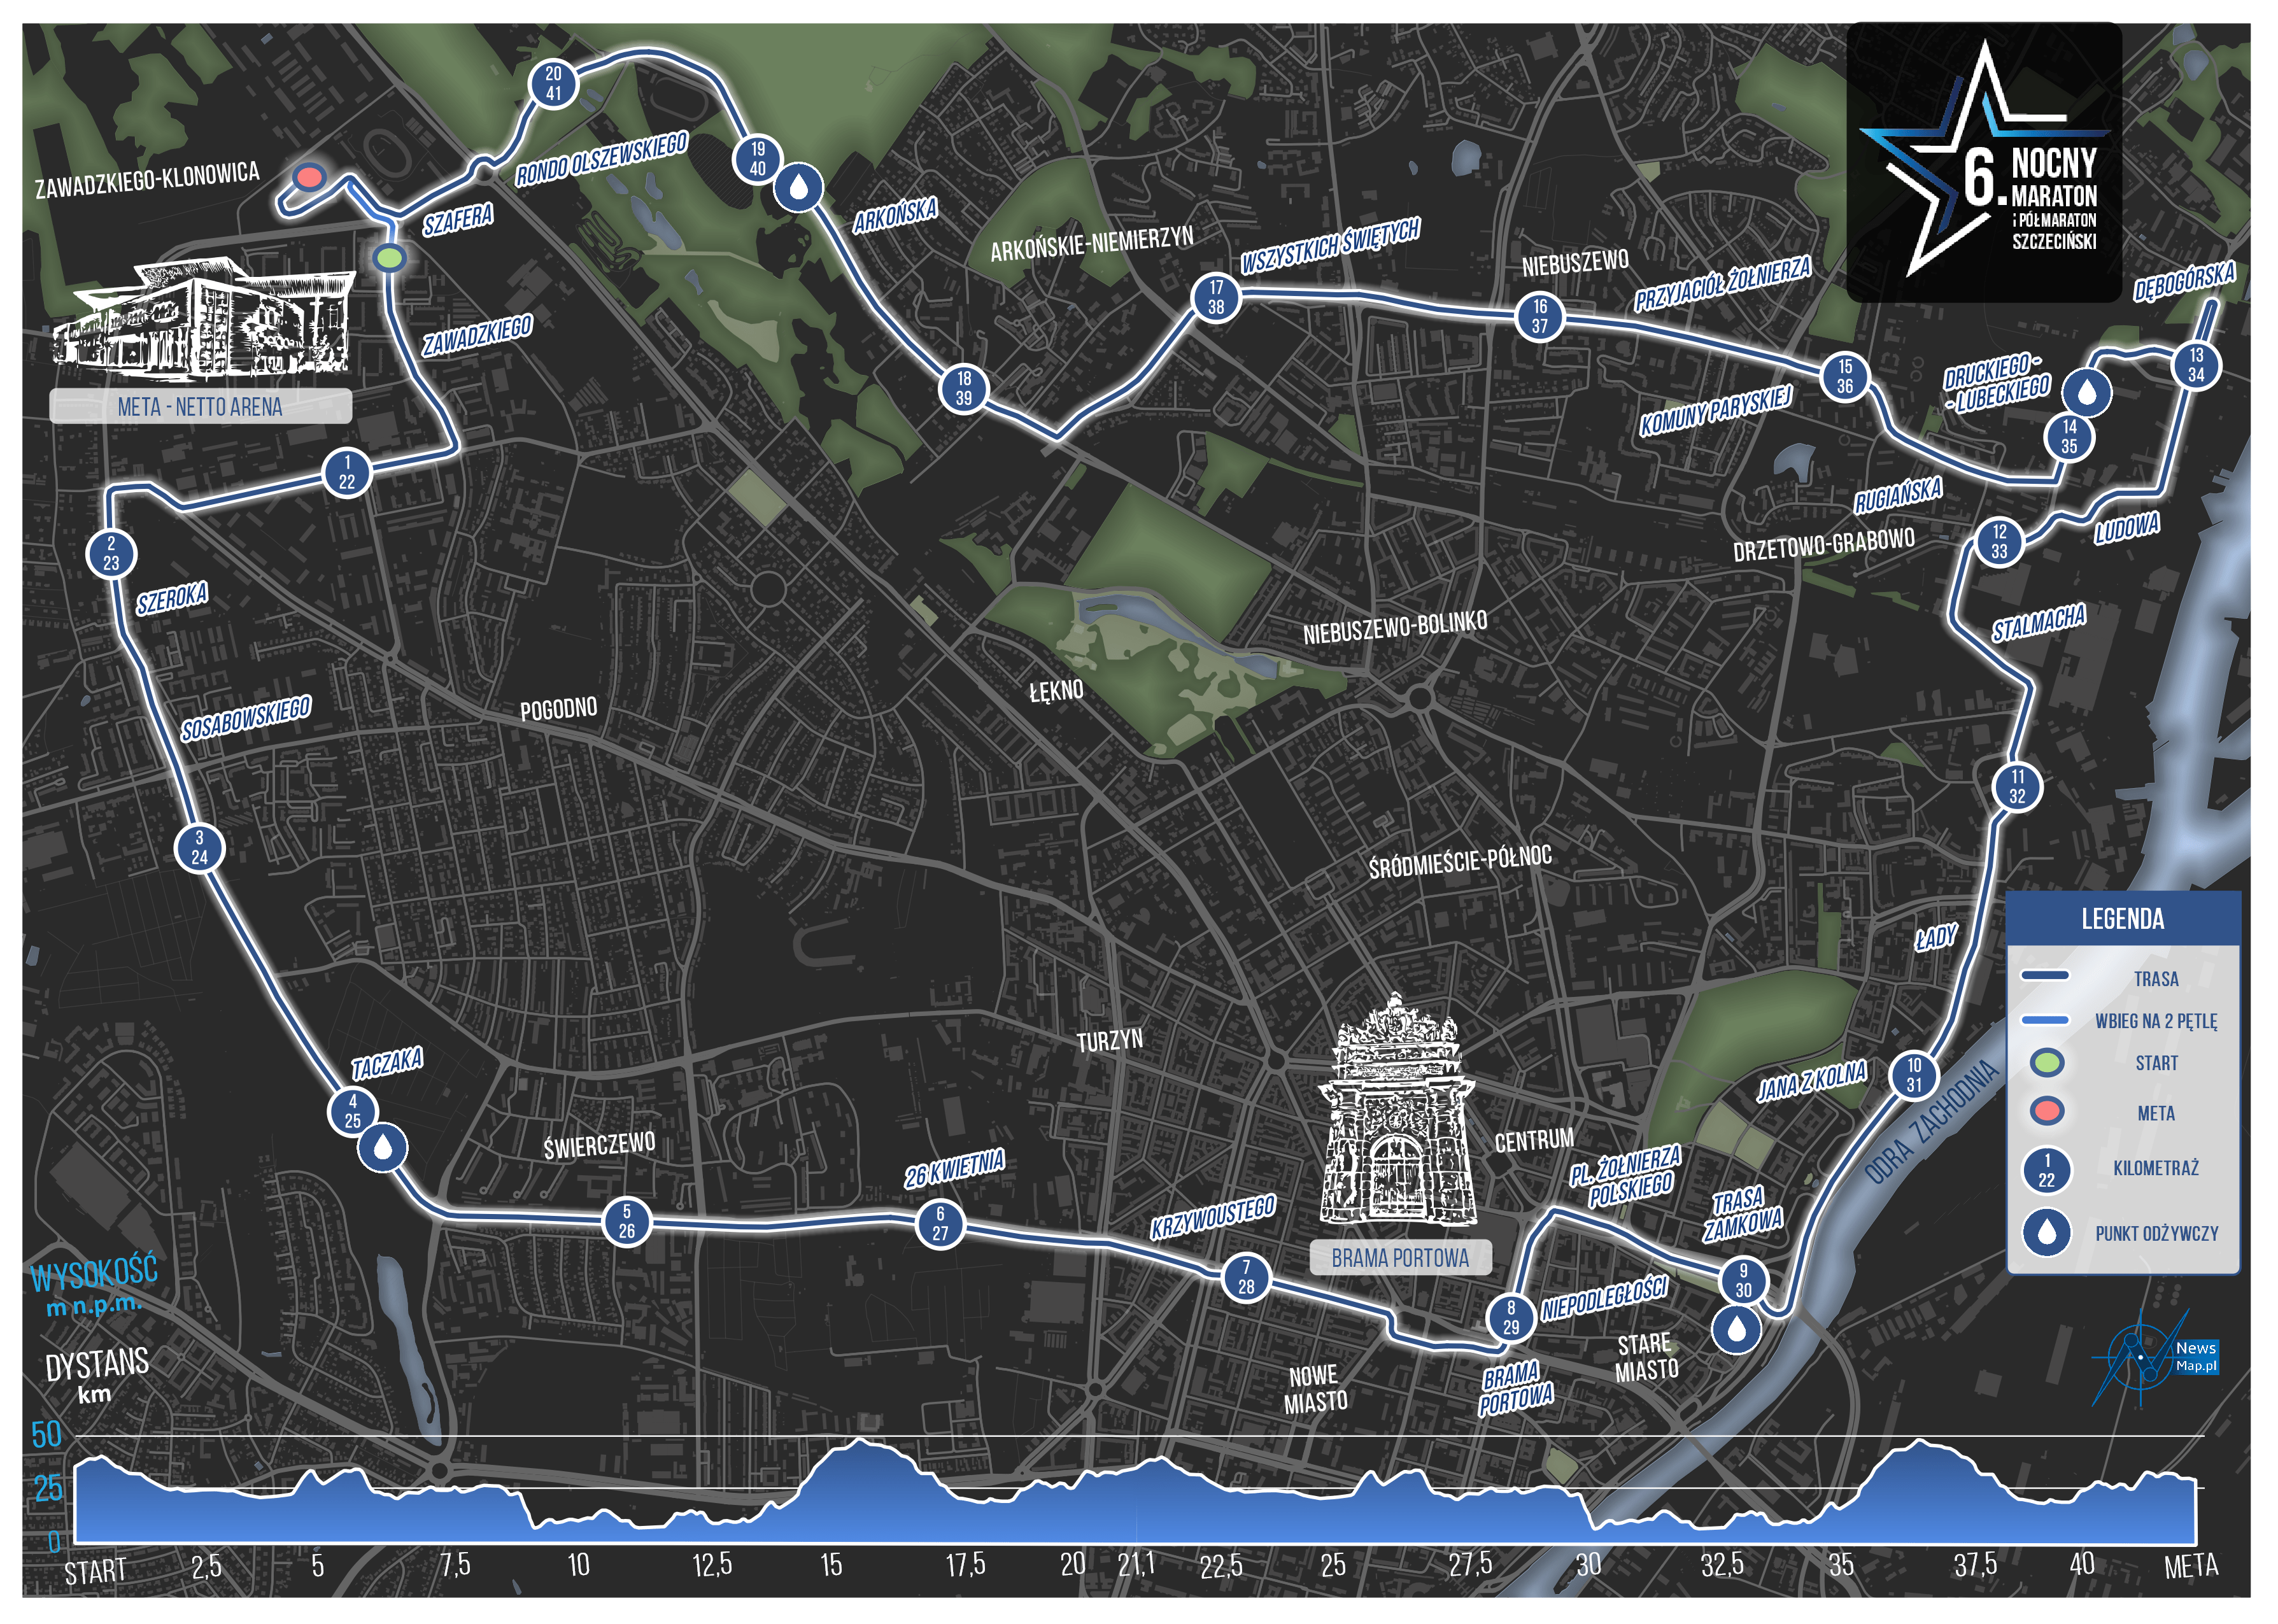 6.-Szczecin-Maraton-i-Półmaraton-mapa-trasy